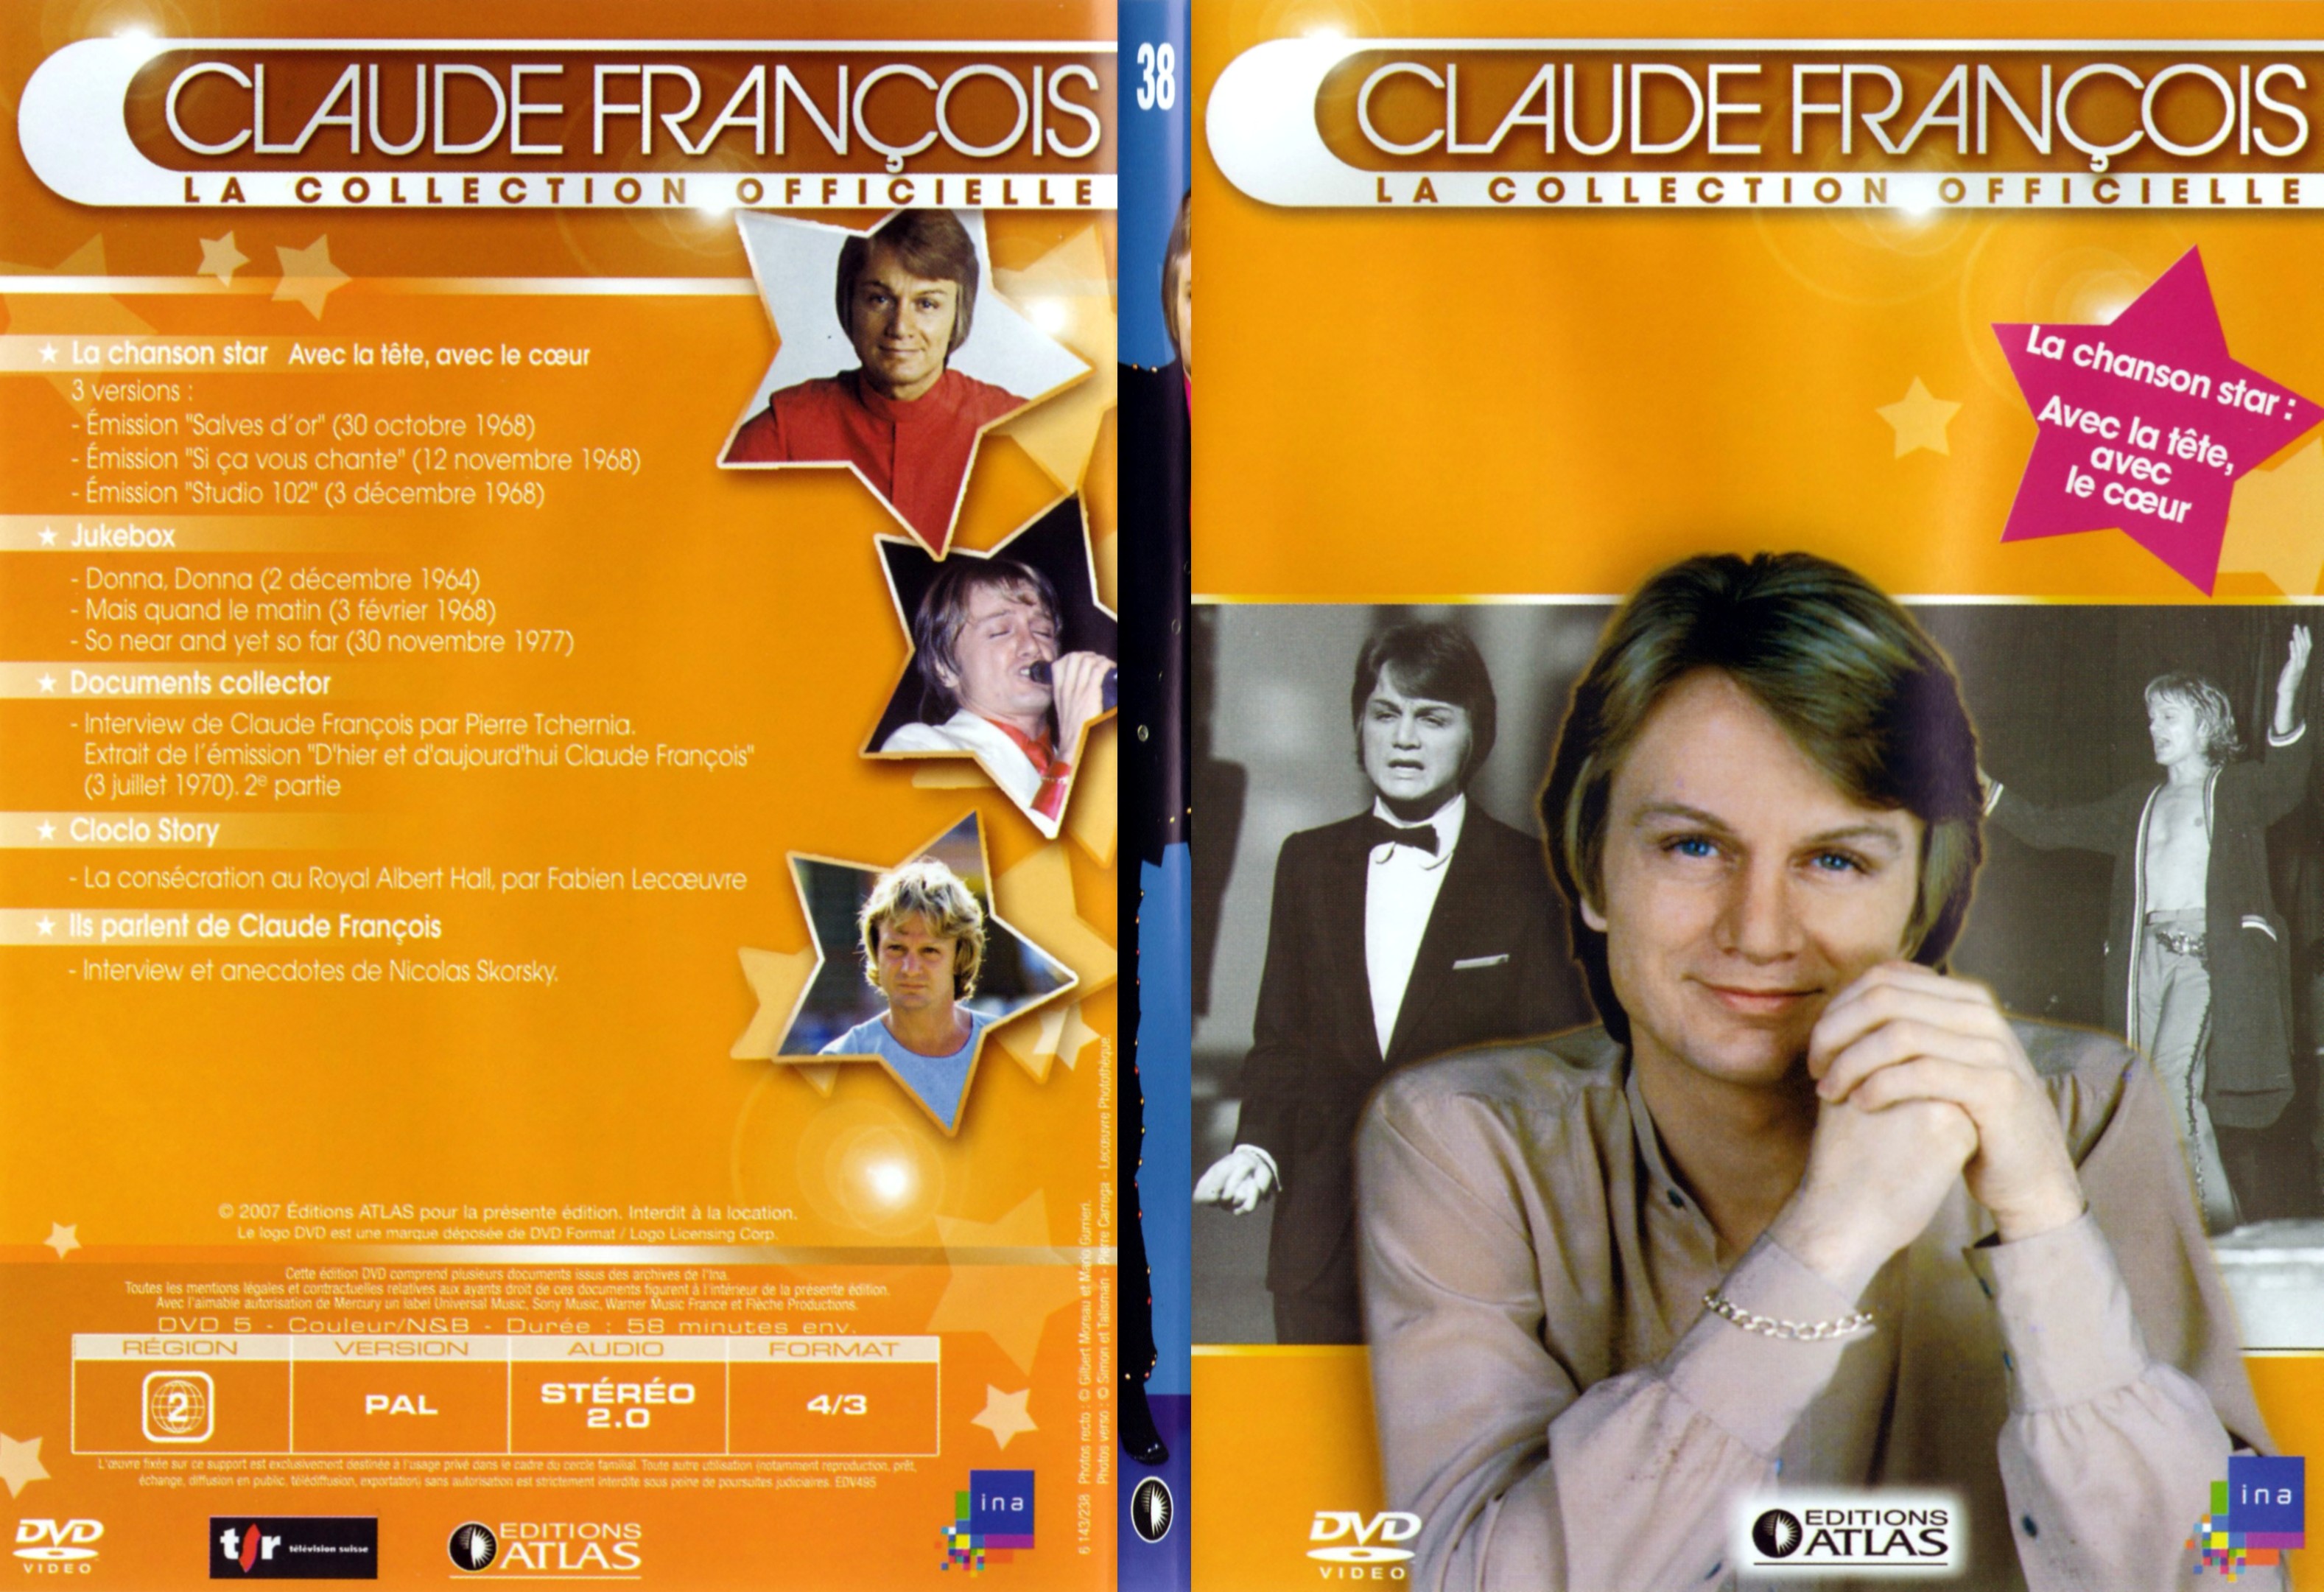 Jaquette DVD Claude francois le collection officielle vol 38 - SLIM